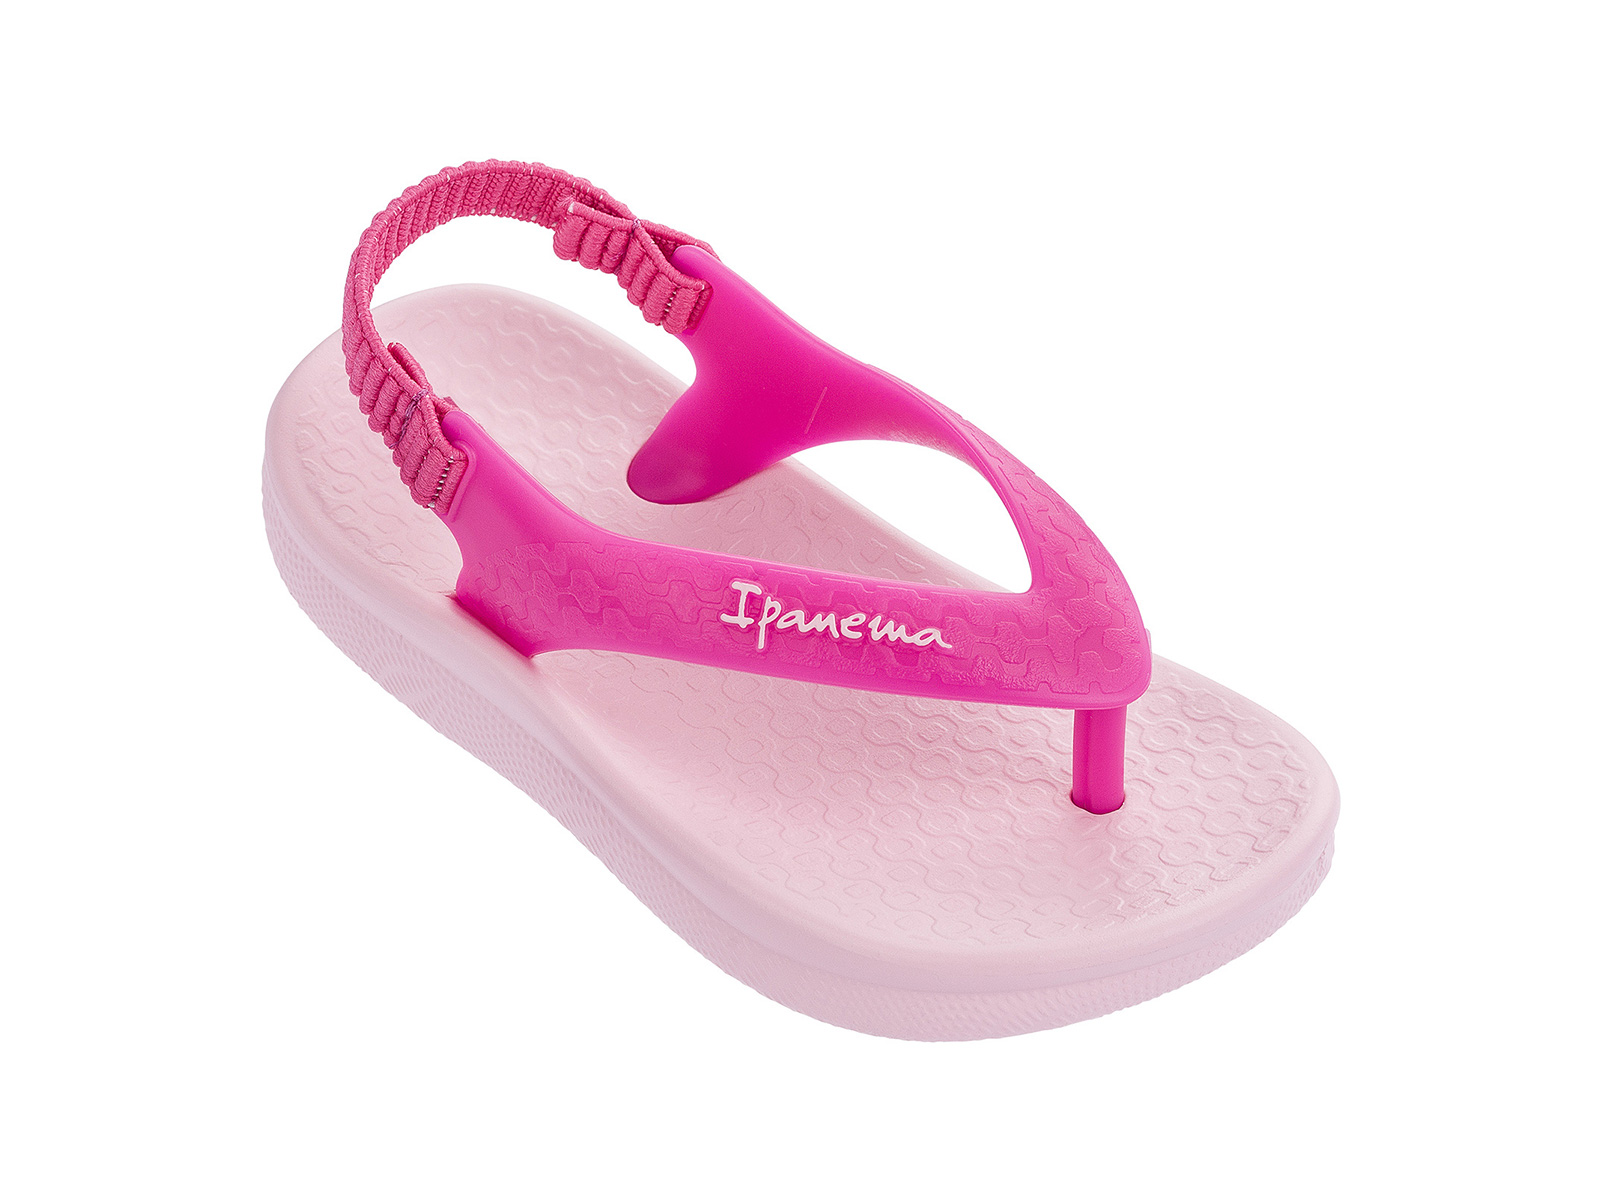 ipanema pink flip flops